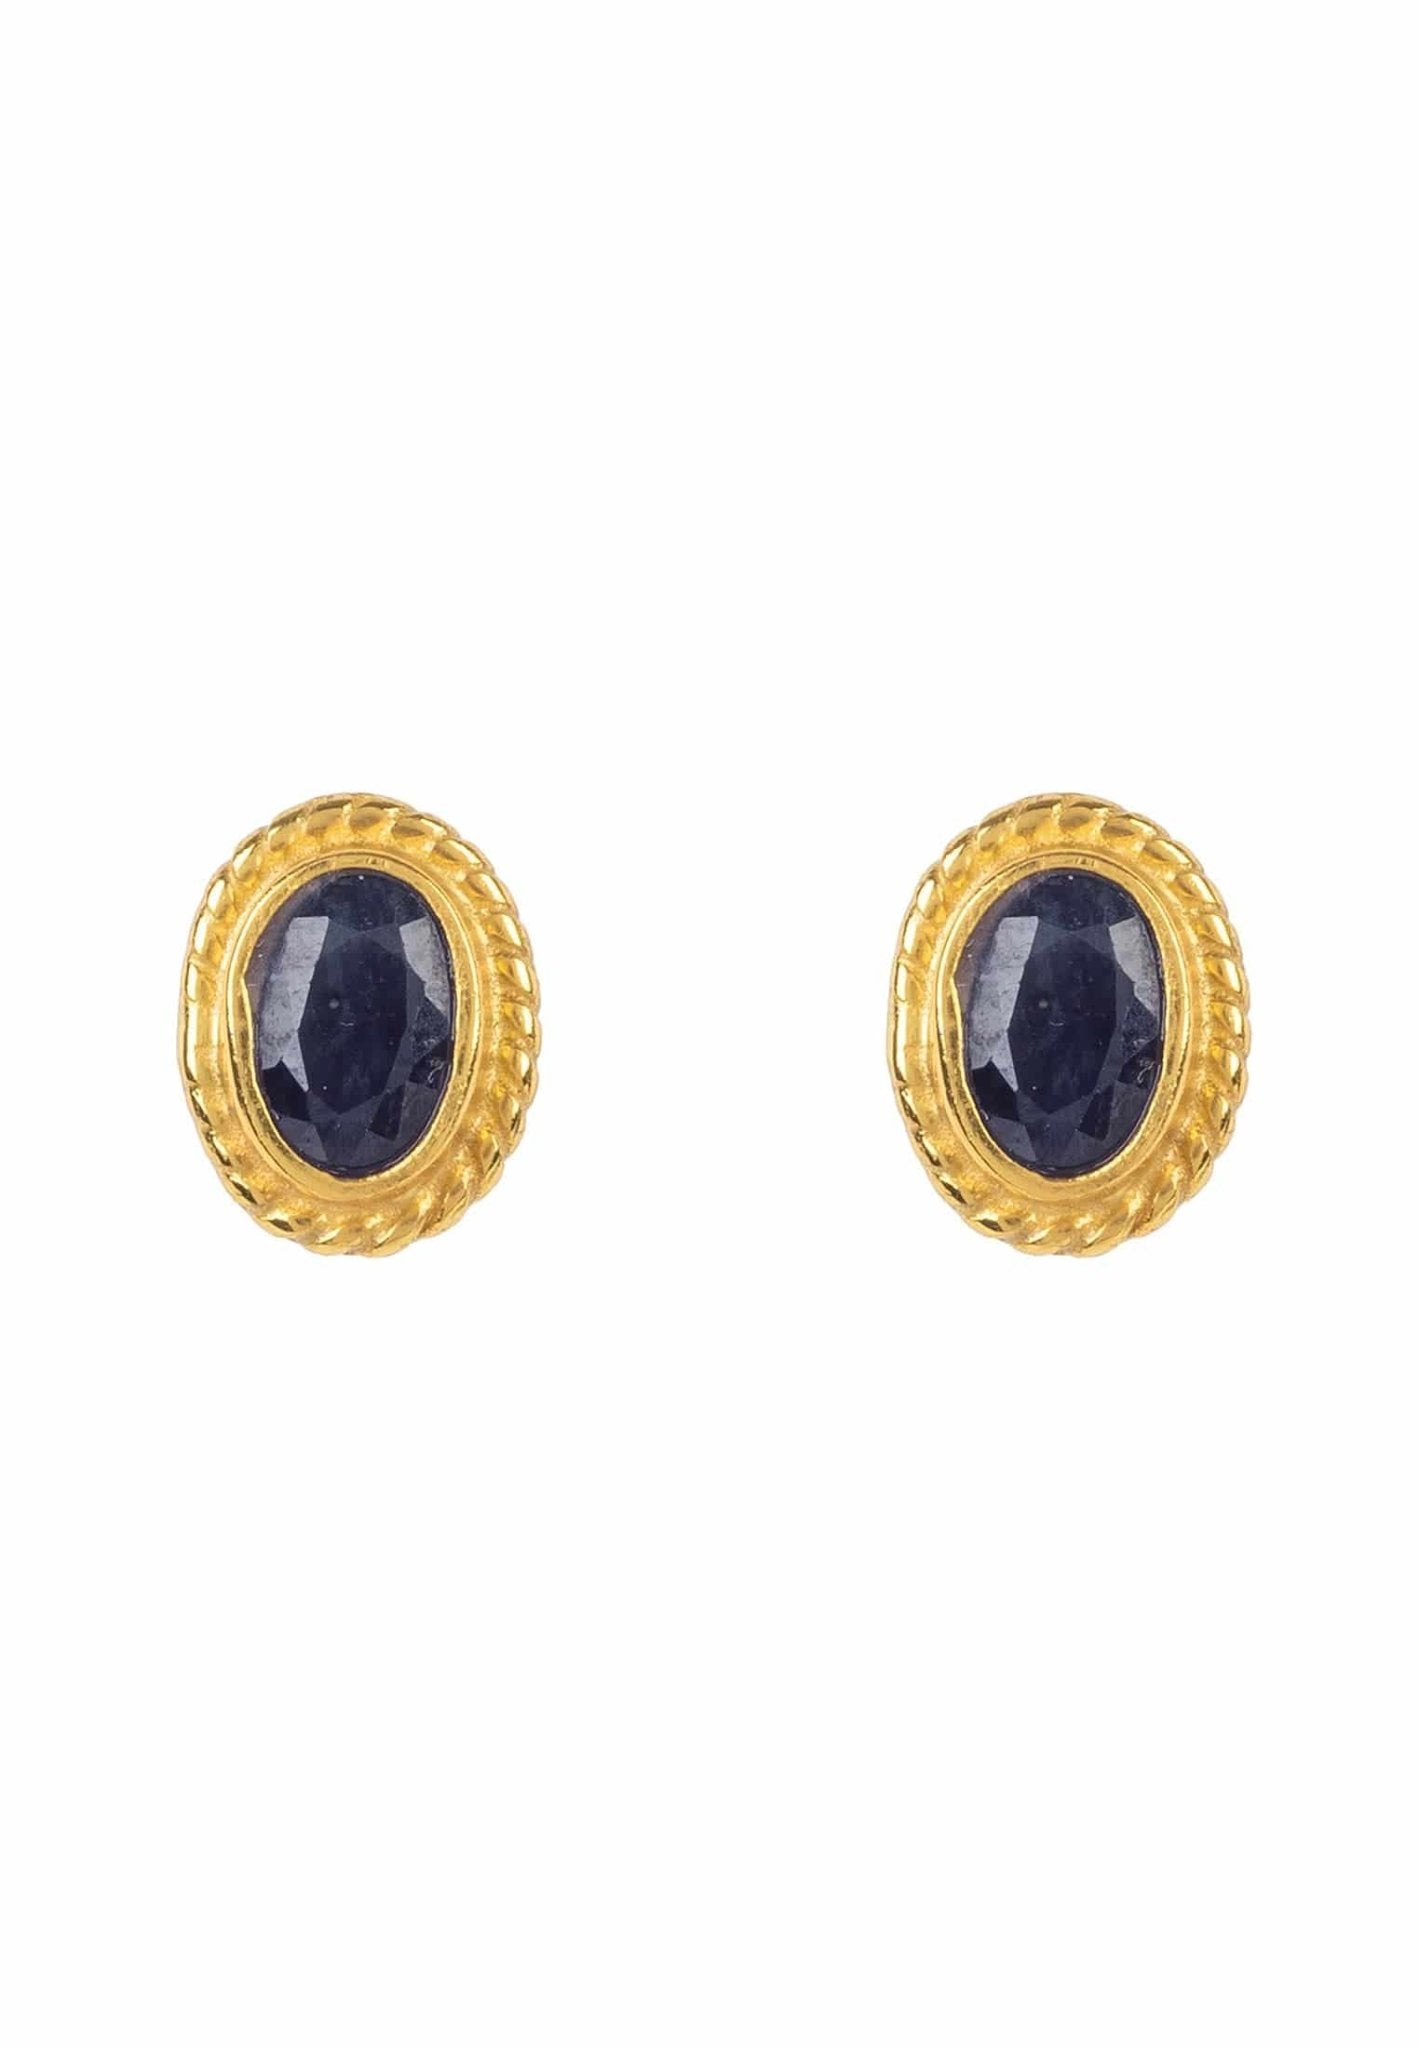 Birthstone Gold Gemstone Stud Earring September Sapphire - LATELITA Earrings